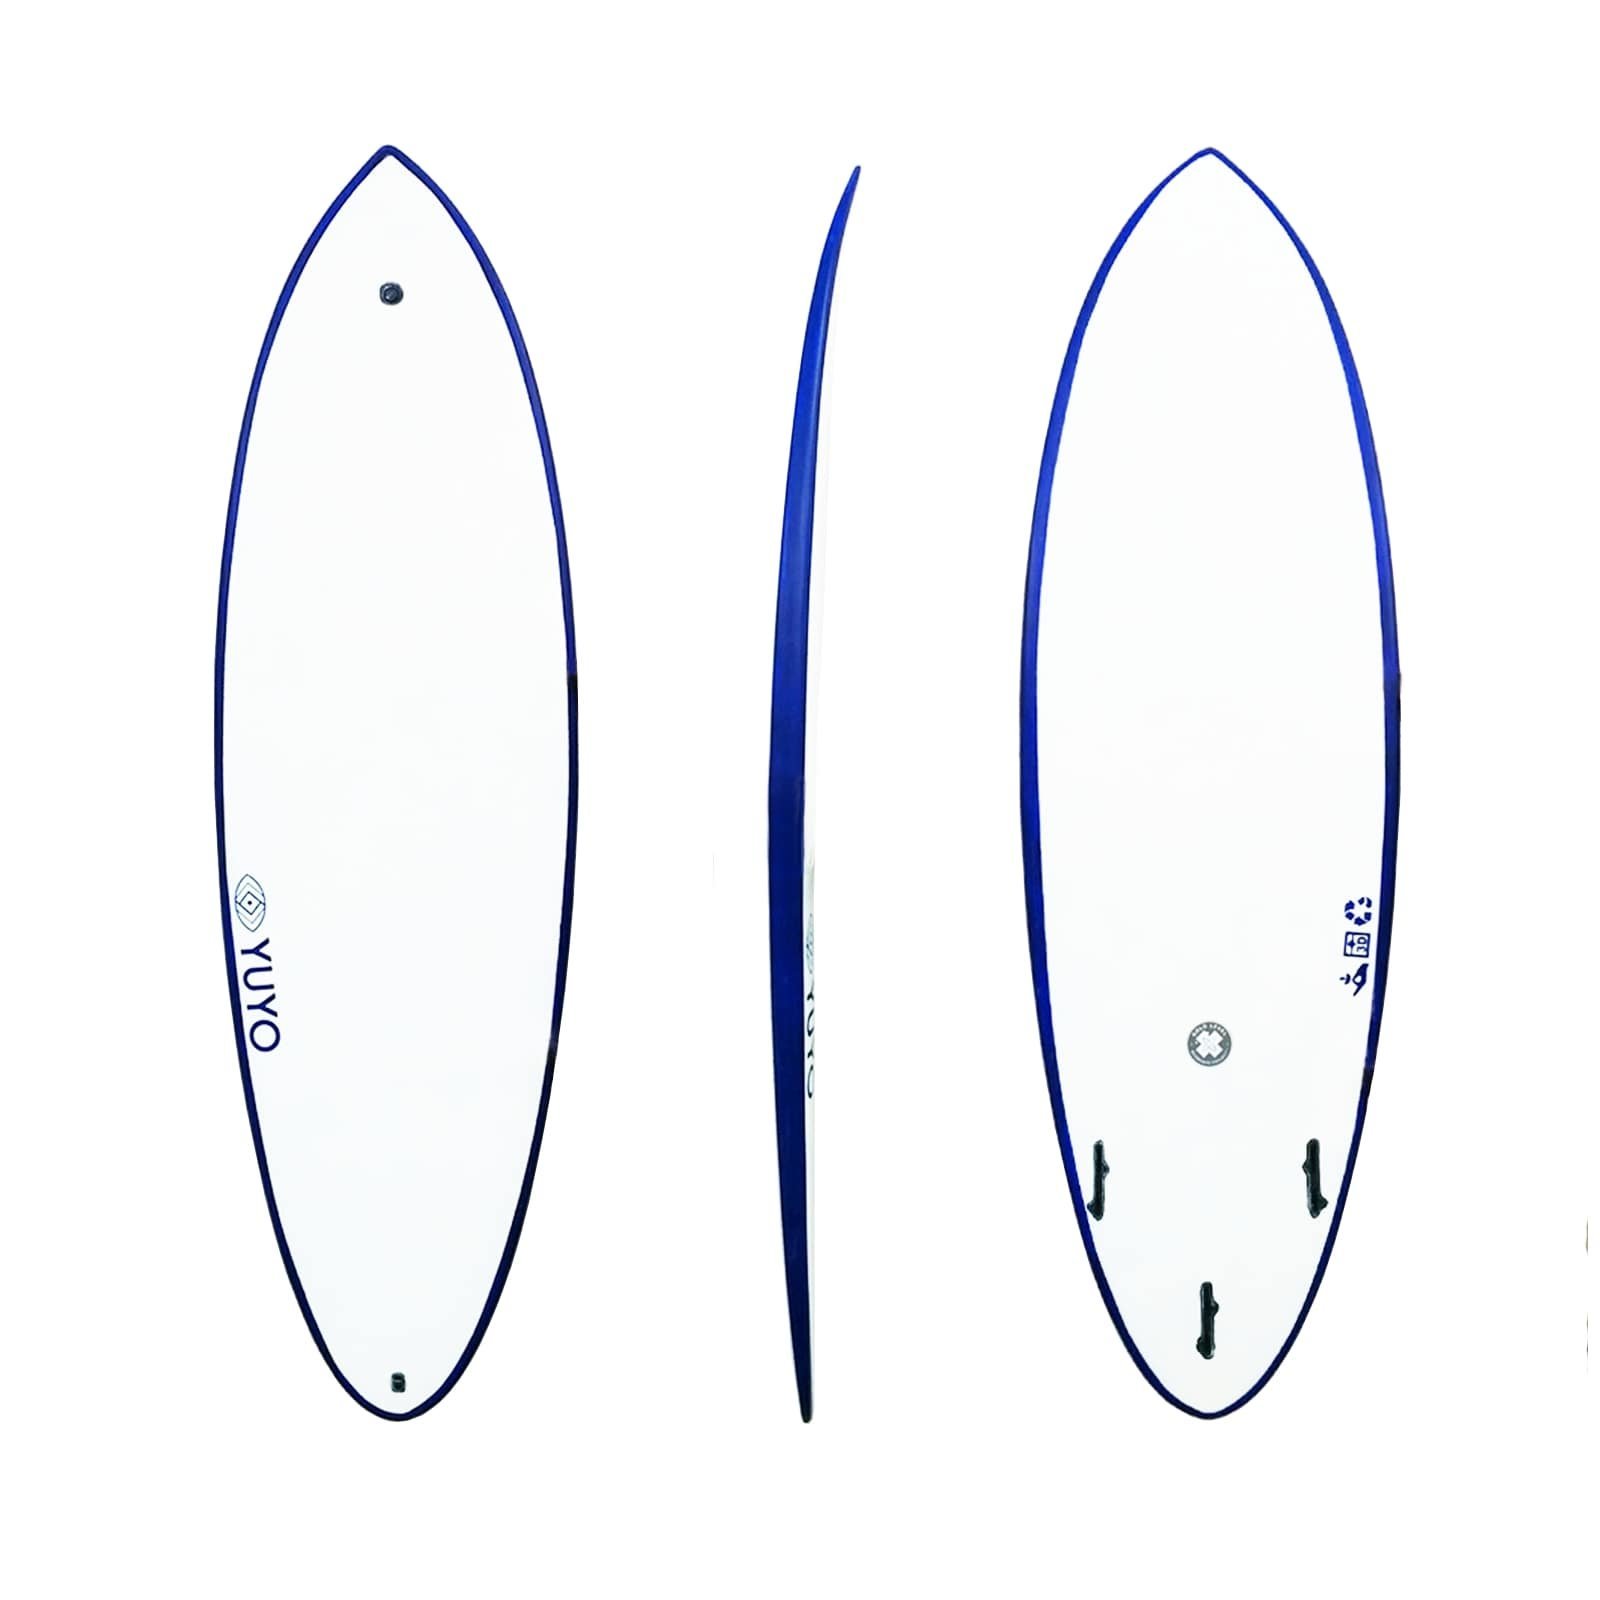 Surf ecoboard Saint pierre 6'0 hybride